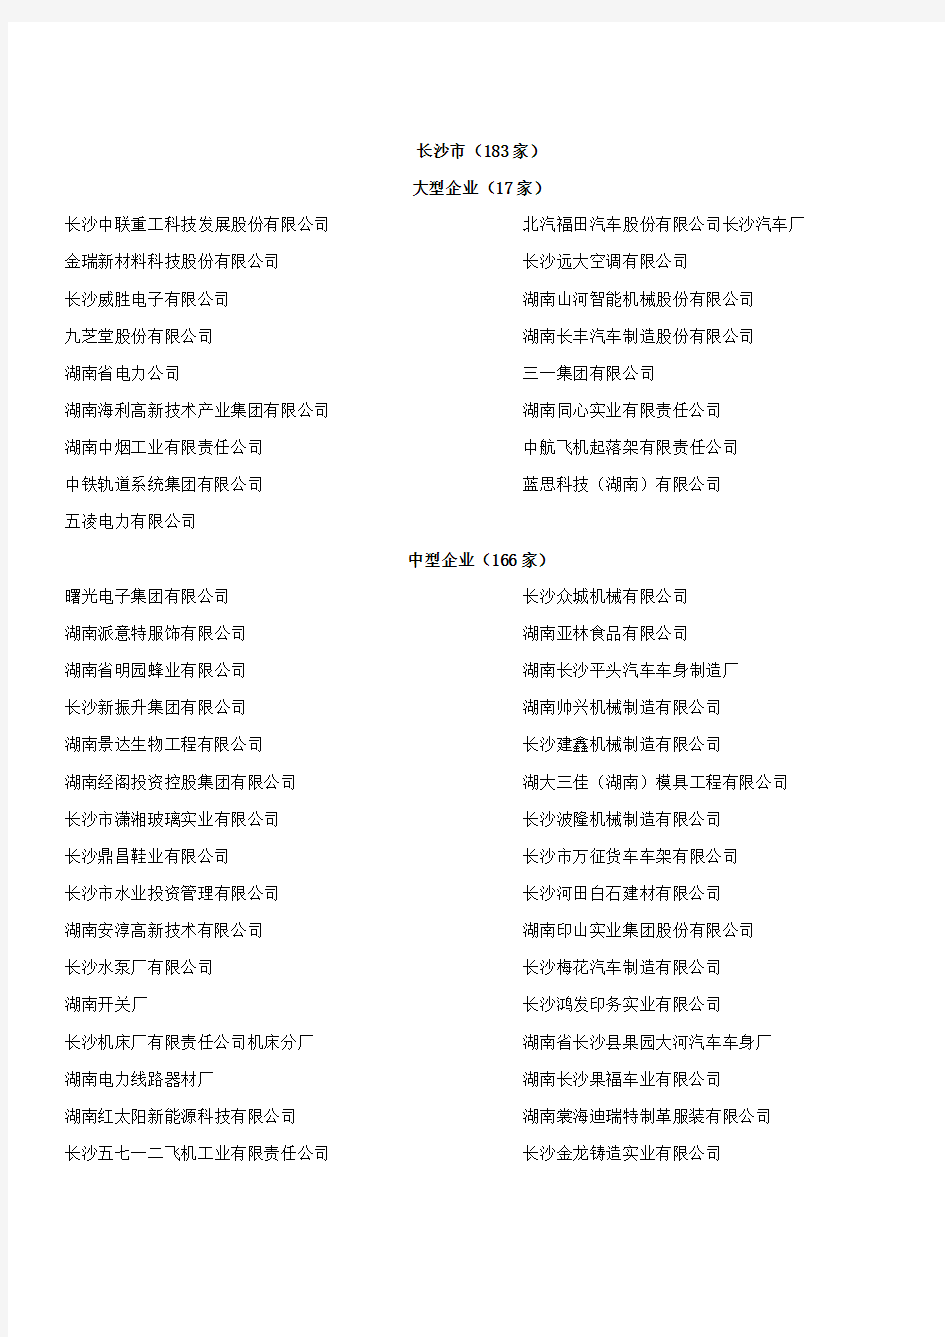 湖南省大中型工业企业名单